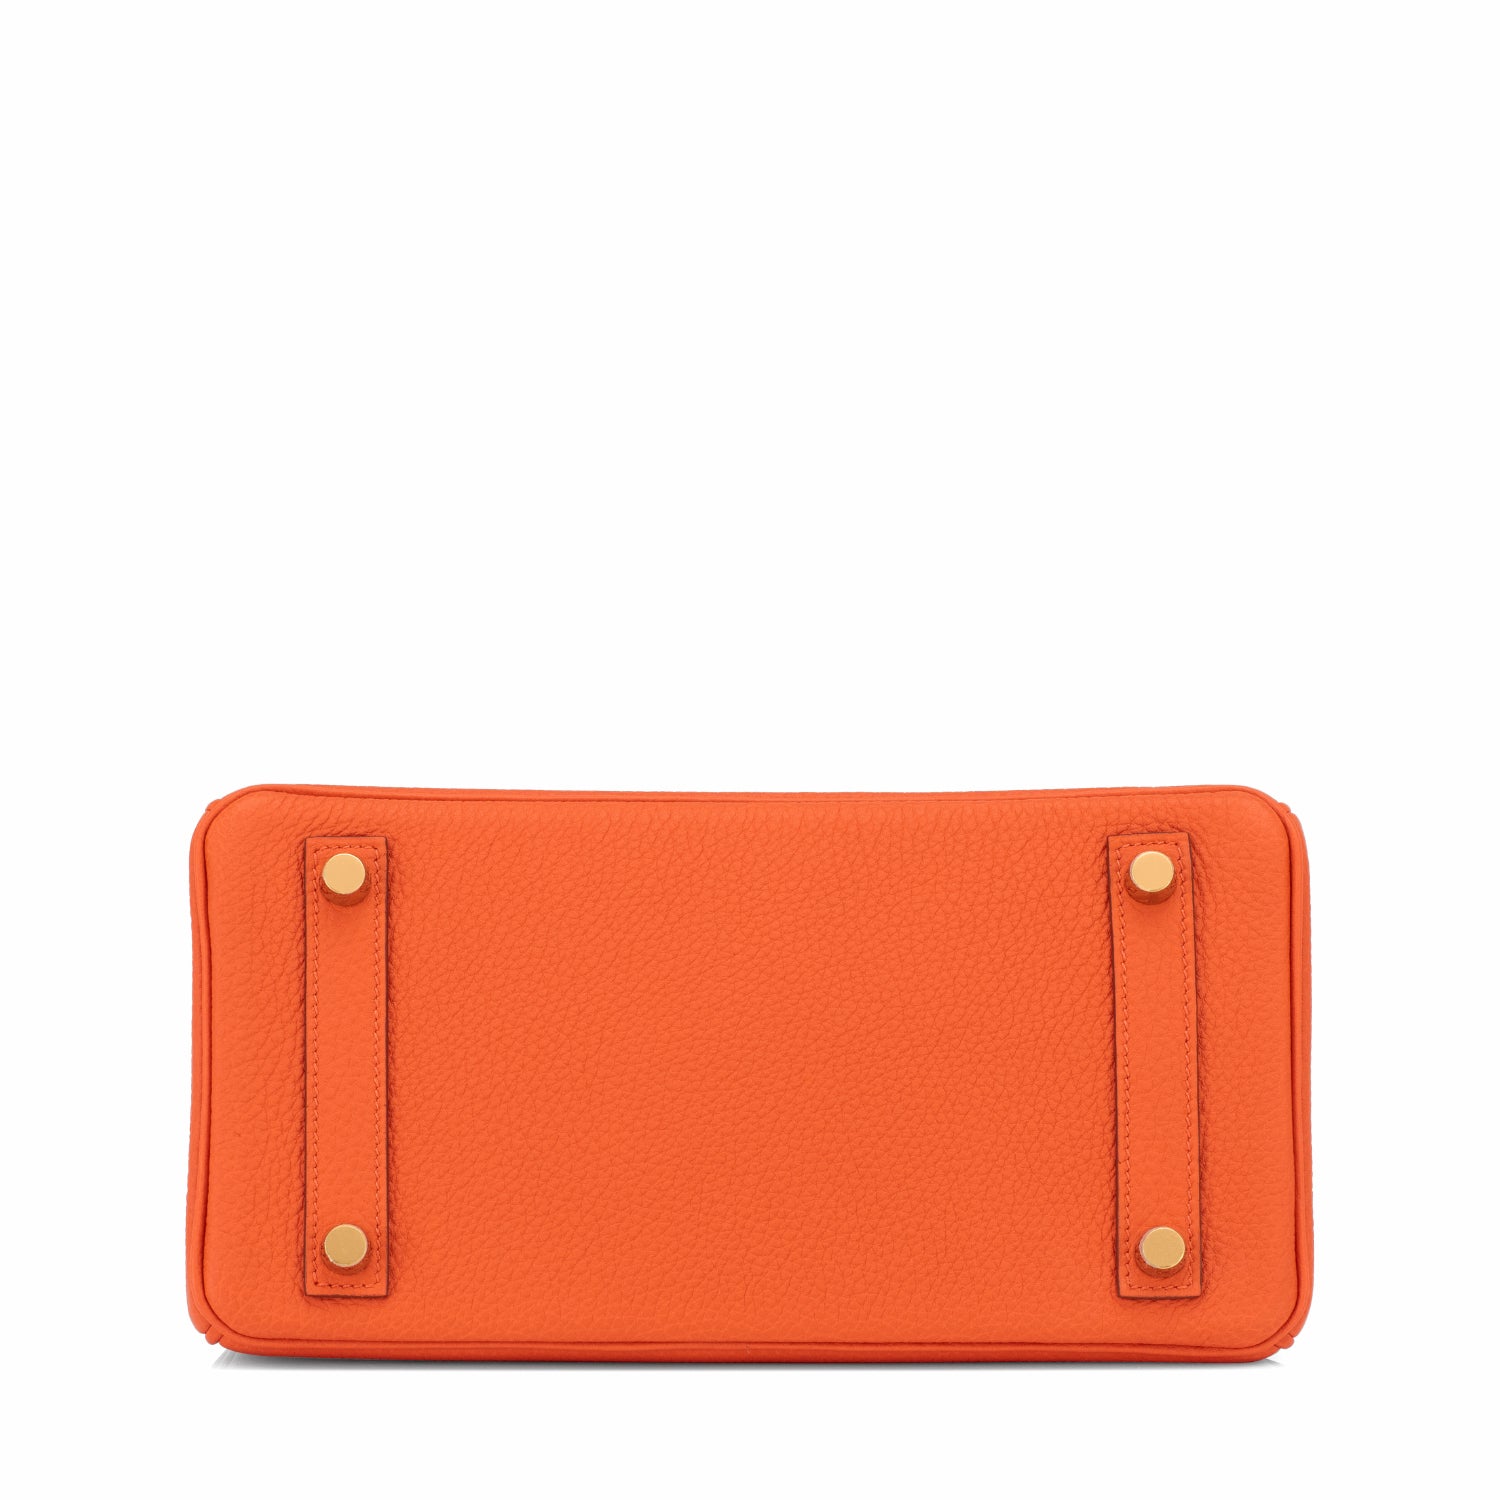 Hermes | Birkin 35 | Orange Poppy Togo Leather | Palladium Hardware